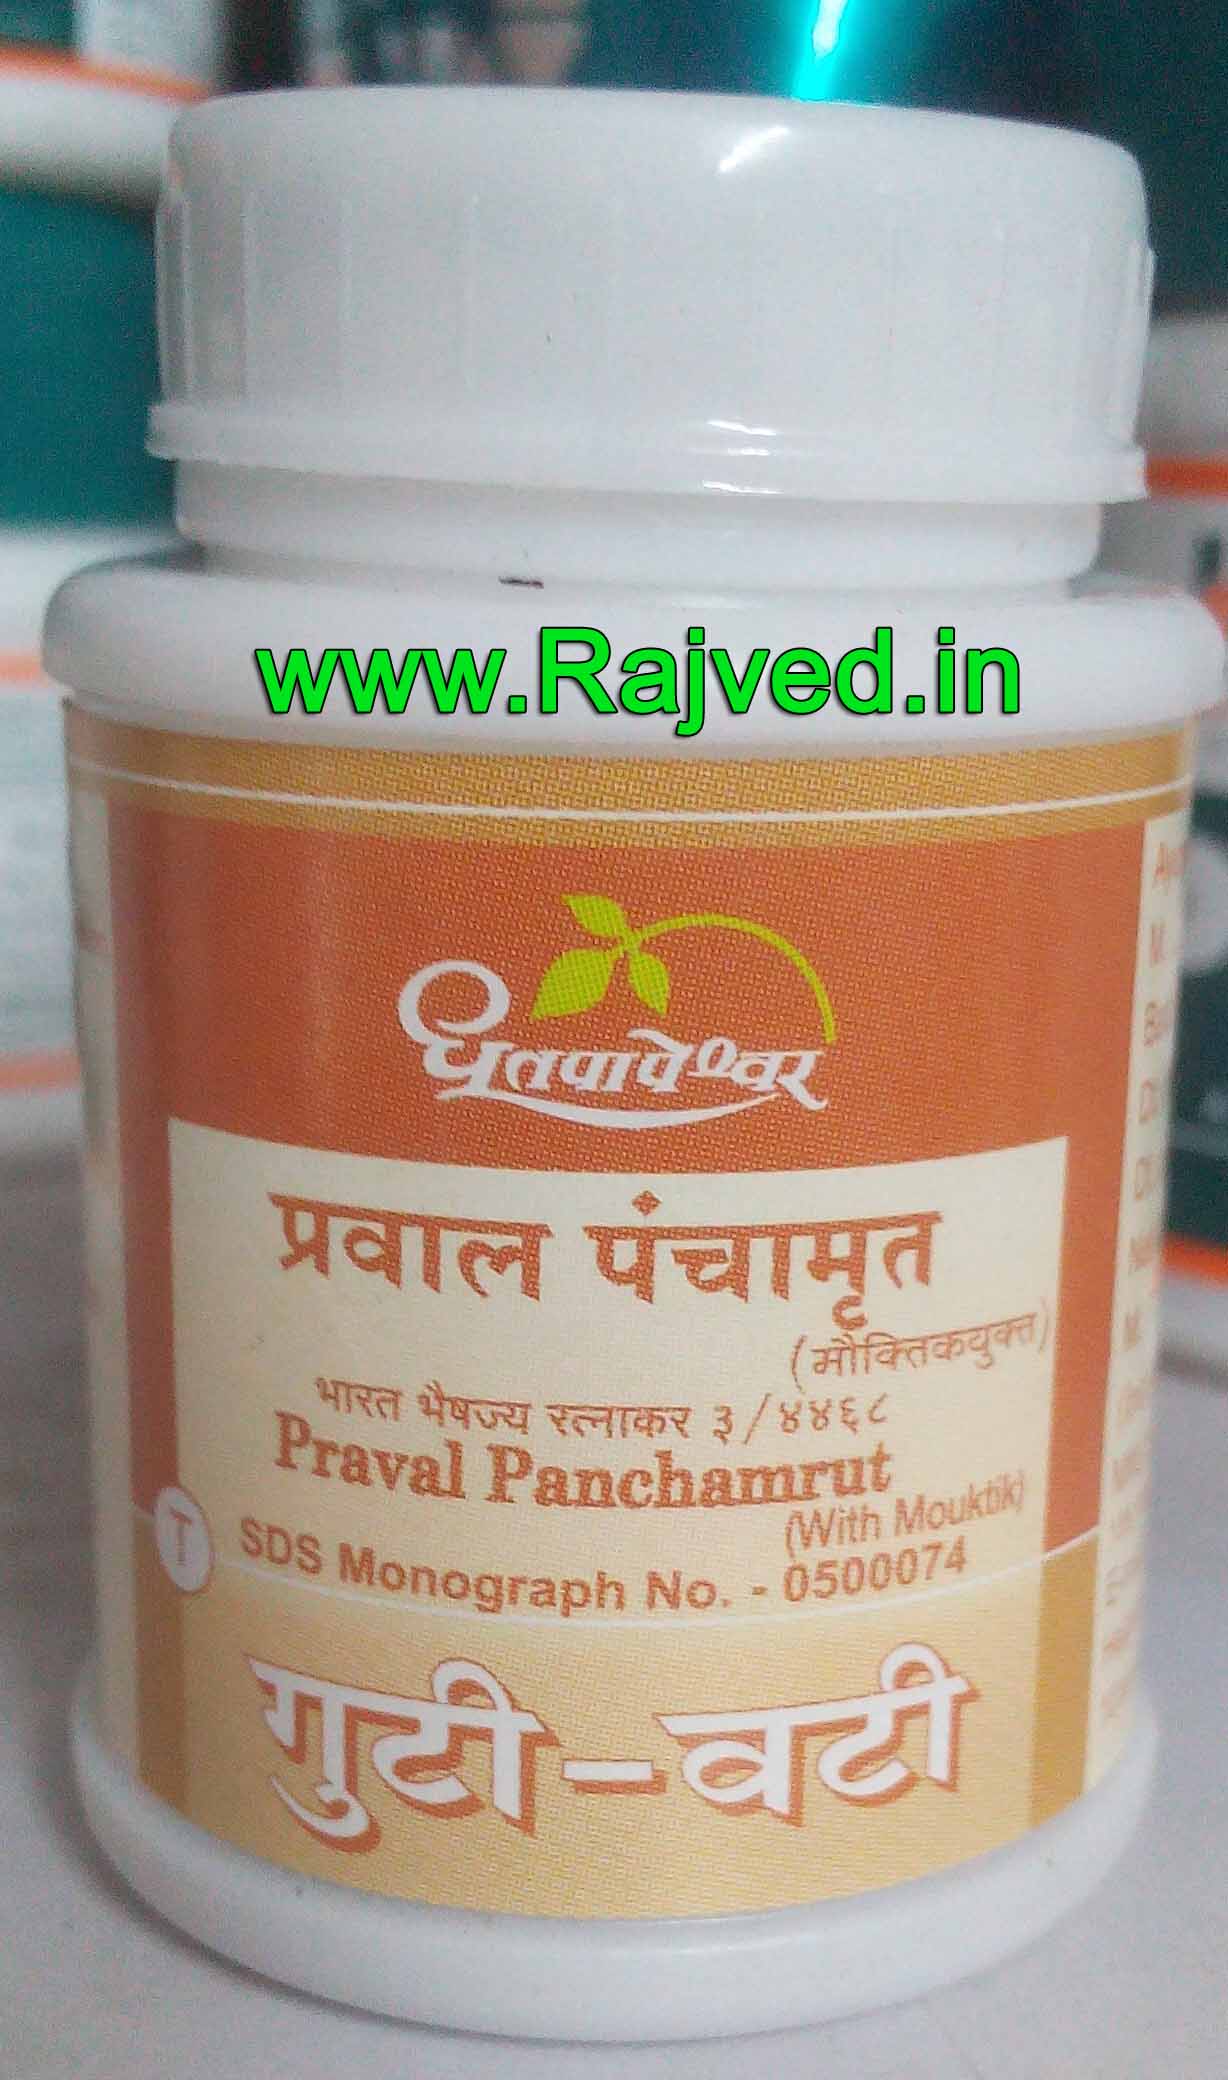 praval panchamrut with mouktik 25tab upto 20% off Shree Dhootpapeshwar Panvel